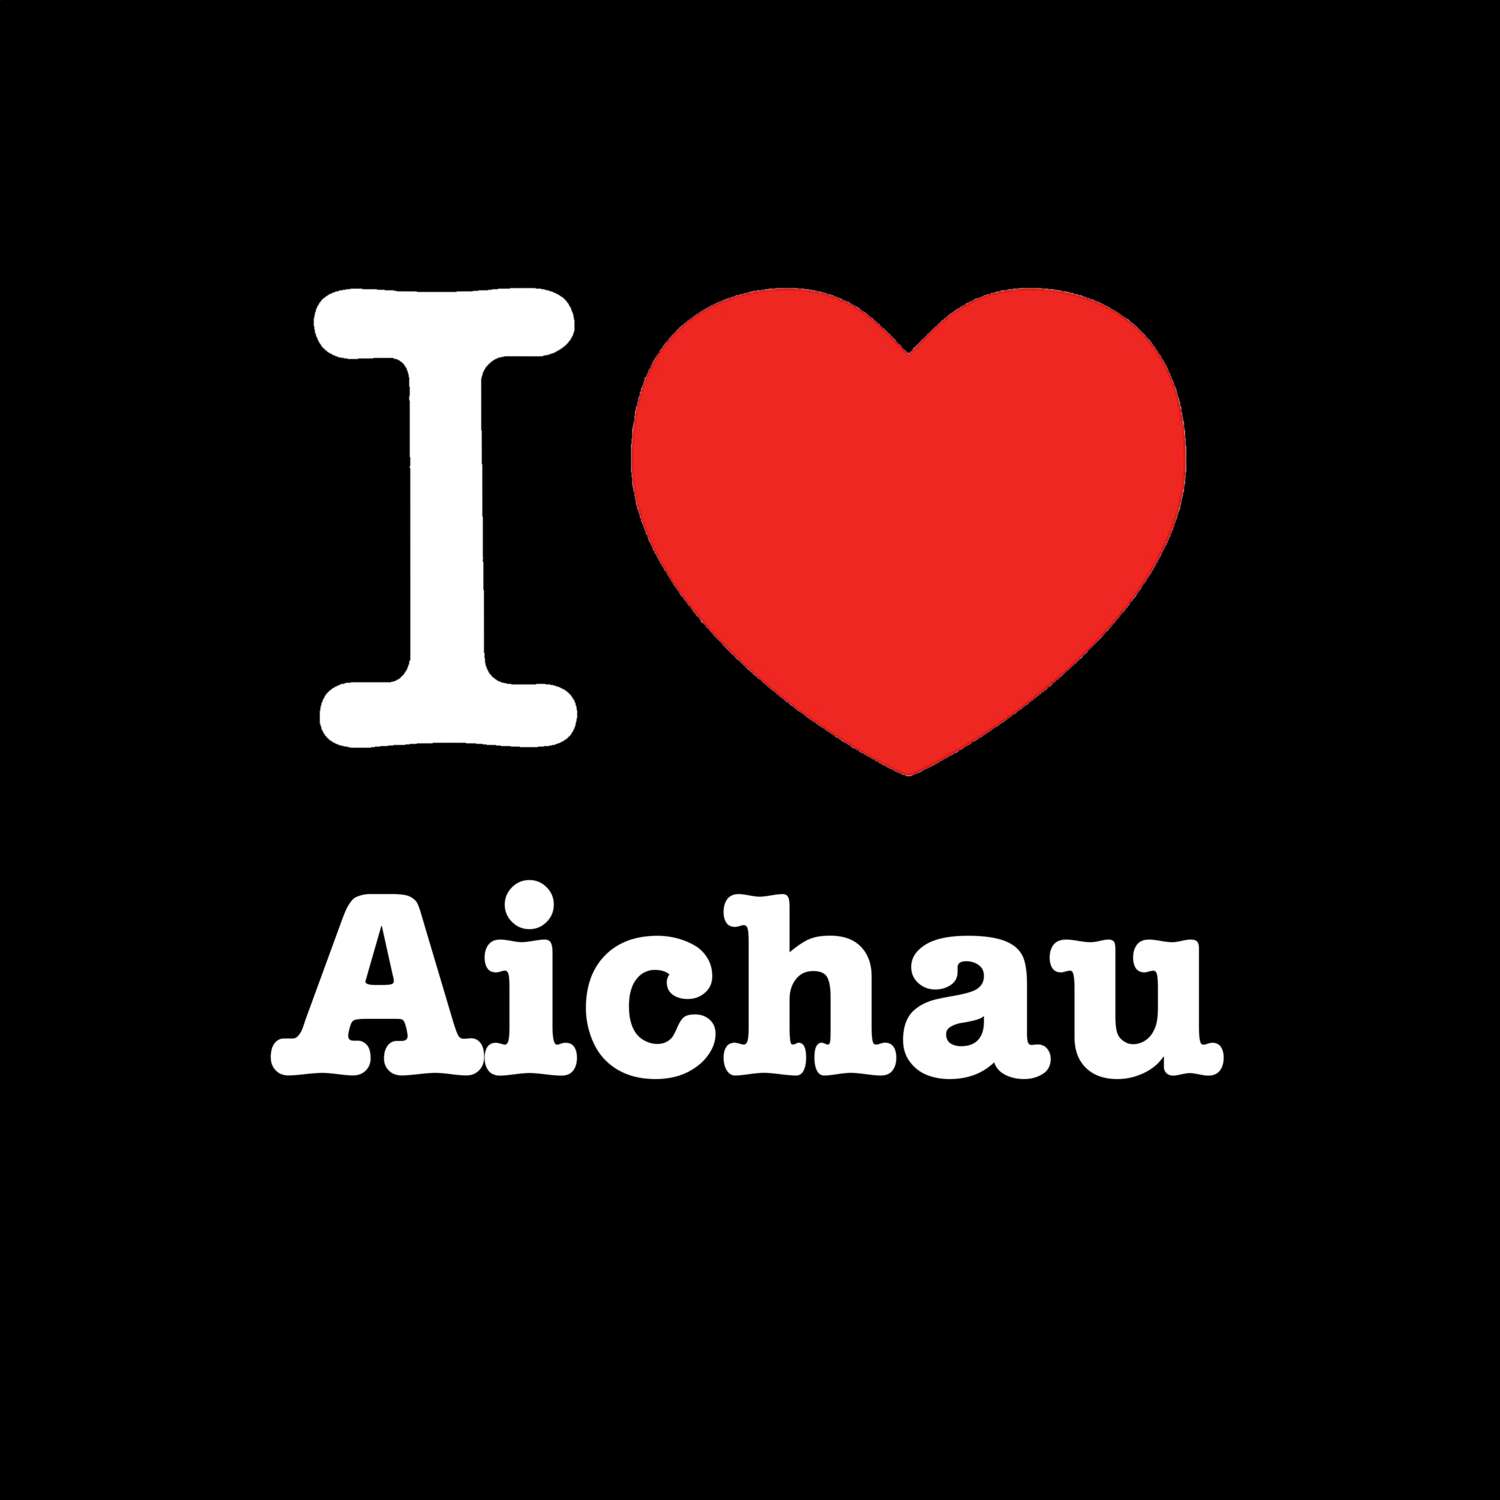 Aichau T-Shirt »I love«